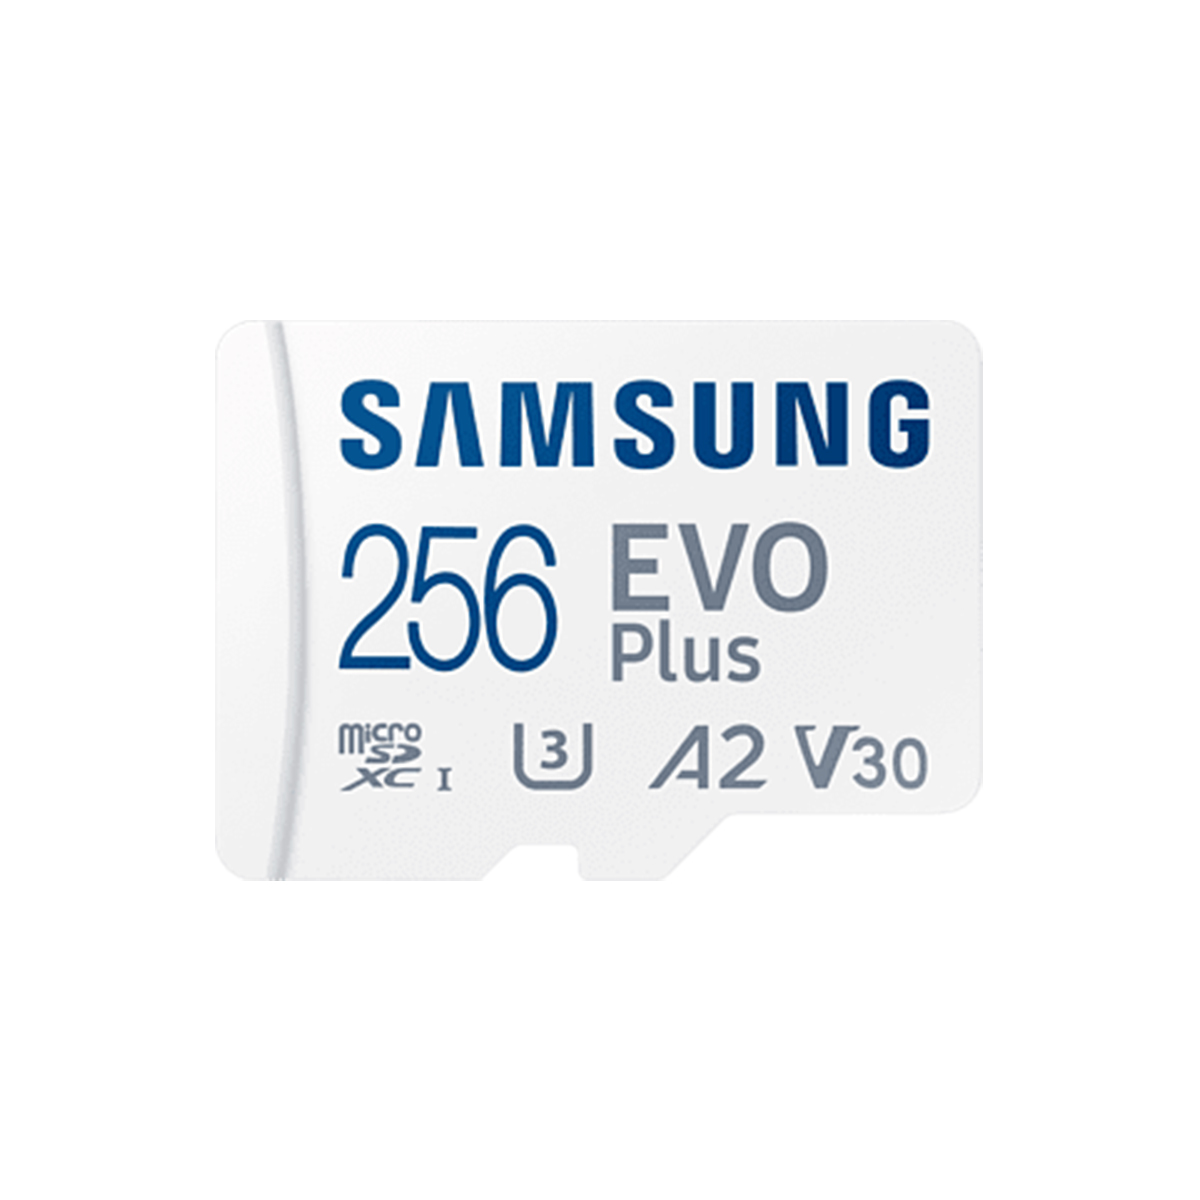 کارت حافظه microSDXC سامسونگ مدل Evo Plus 256gb